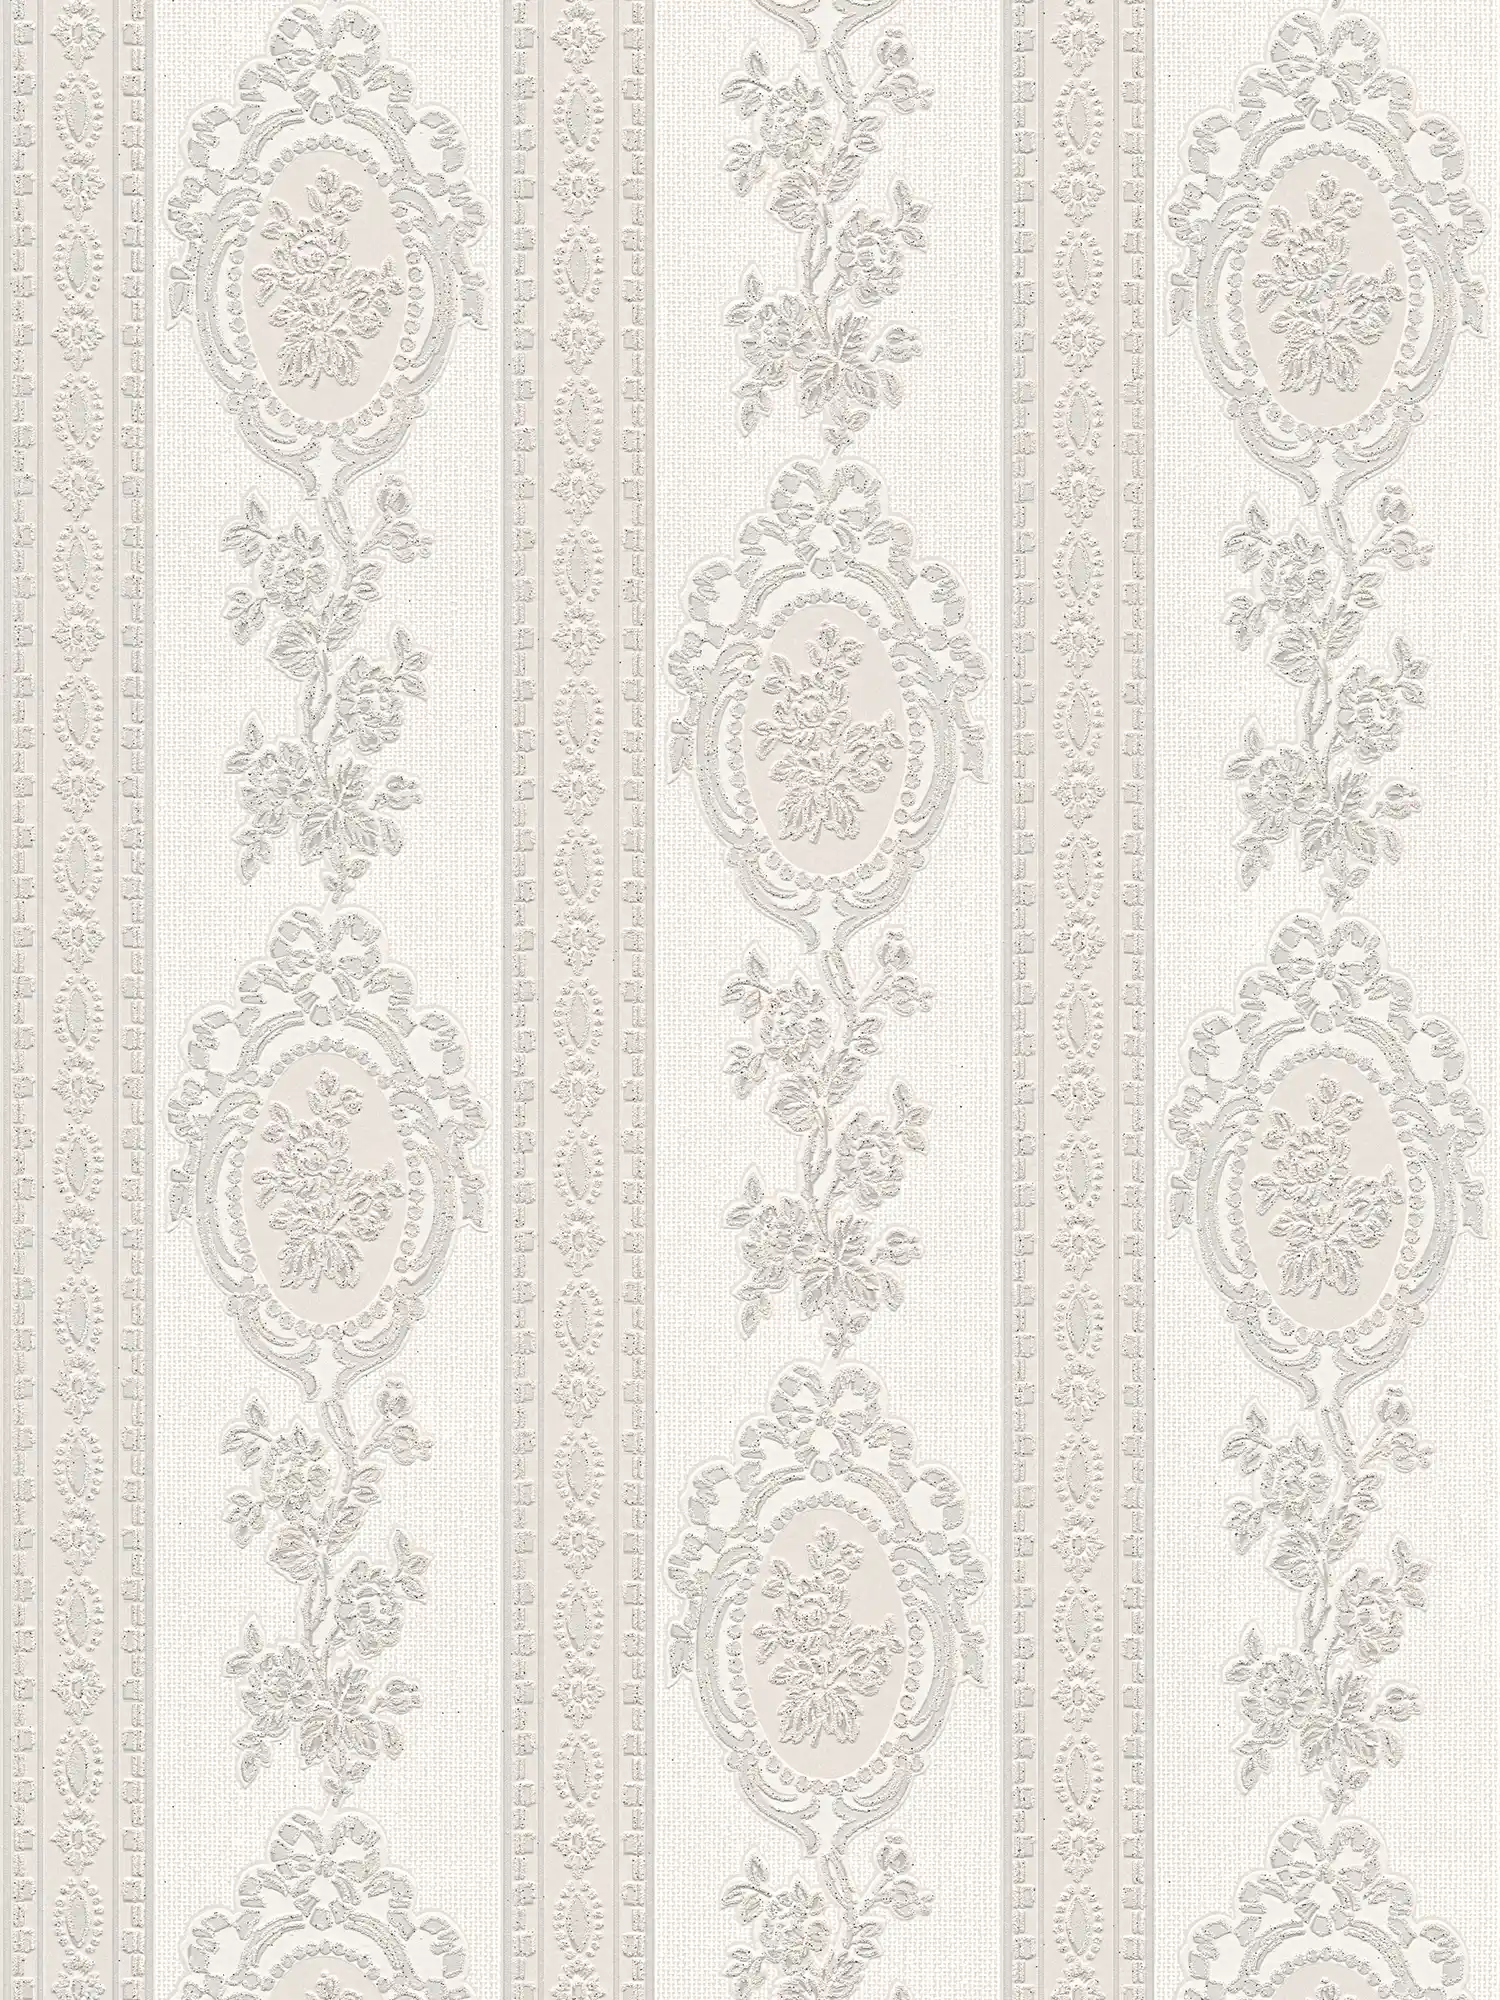 Papel pintado ornamental elementos florales, rayas y flores - gris, blanco, plata
